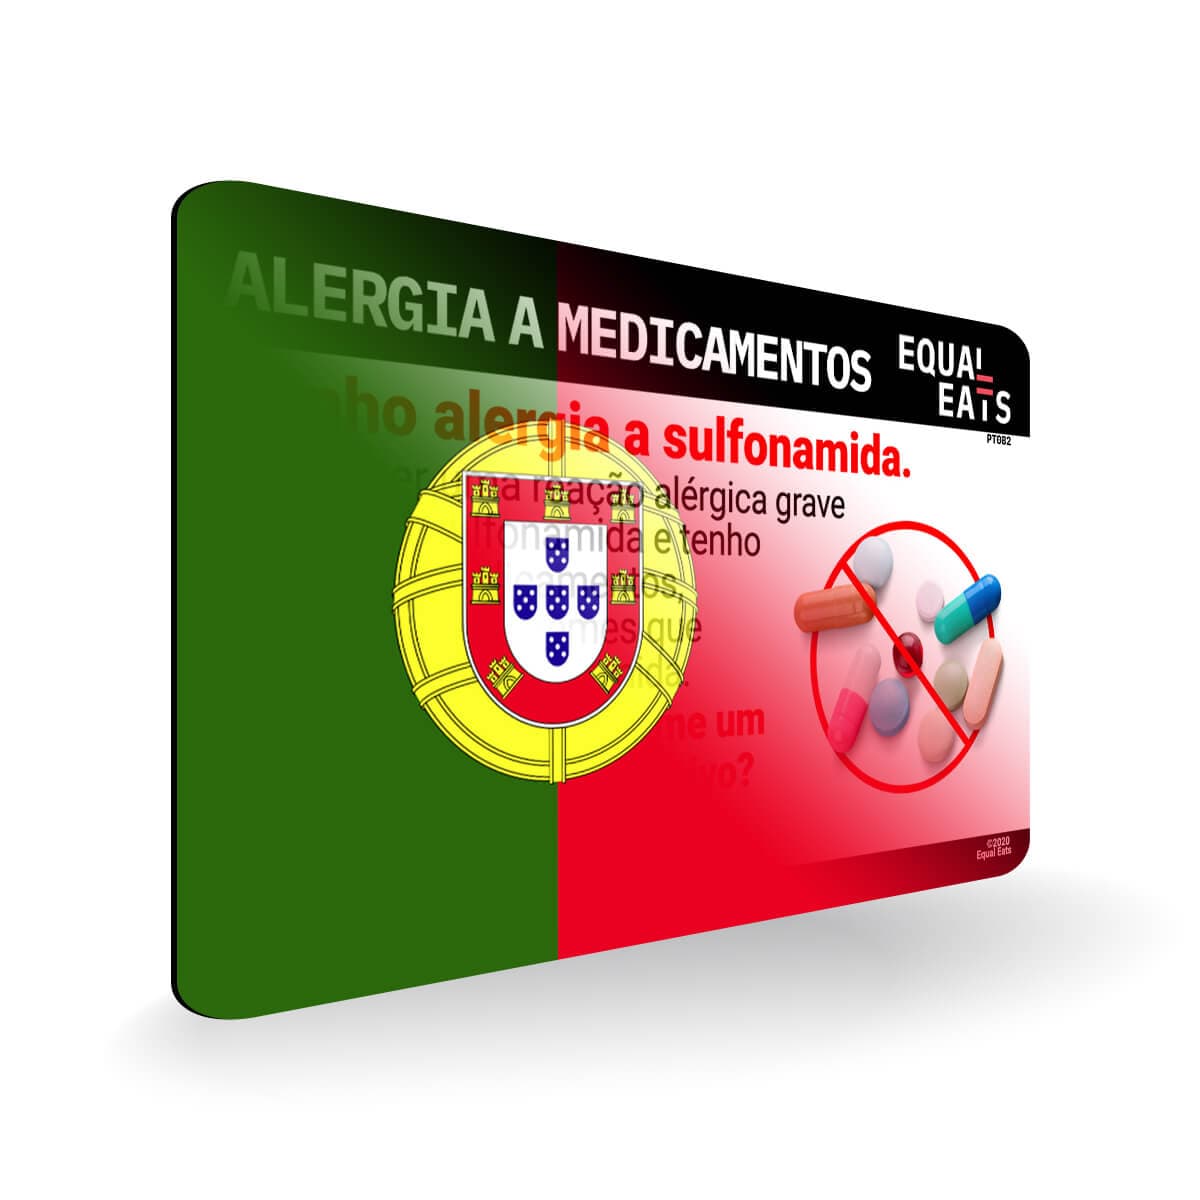 Sulfa Allergy in Portuguese. Sulfa Medicine Allergy Card for Portugal